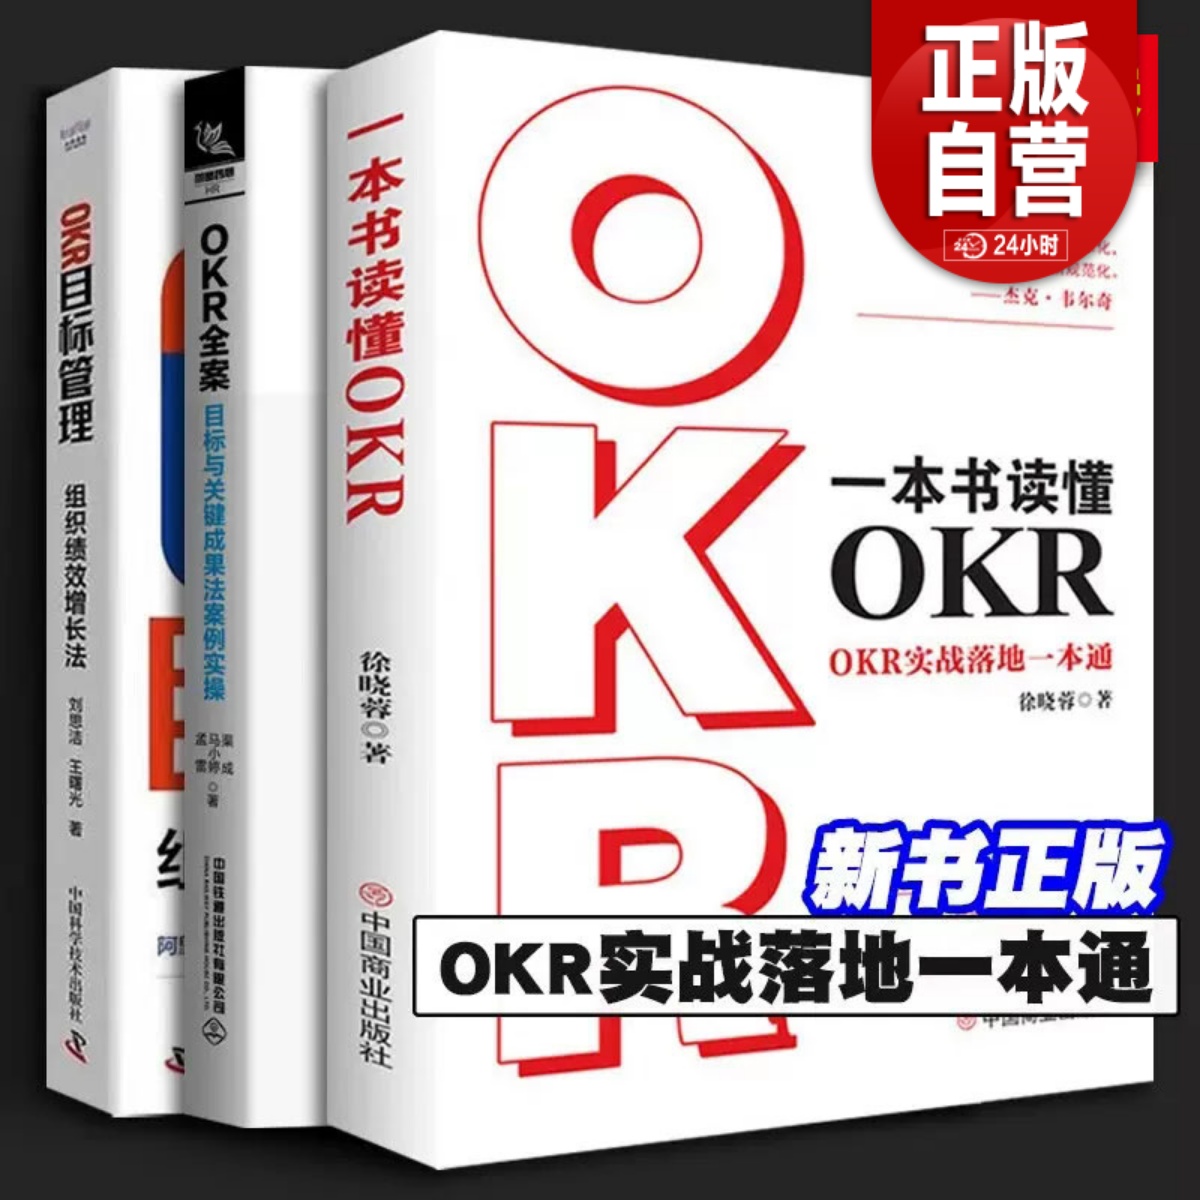 okr工作法全3册 一本书读懂OKR+OKR全案 目标与关键成果法案例实操+OKR目标管理 组织绩效增长法 这就是okr okr管理法则 模板书籍